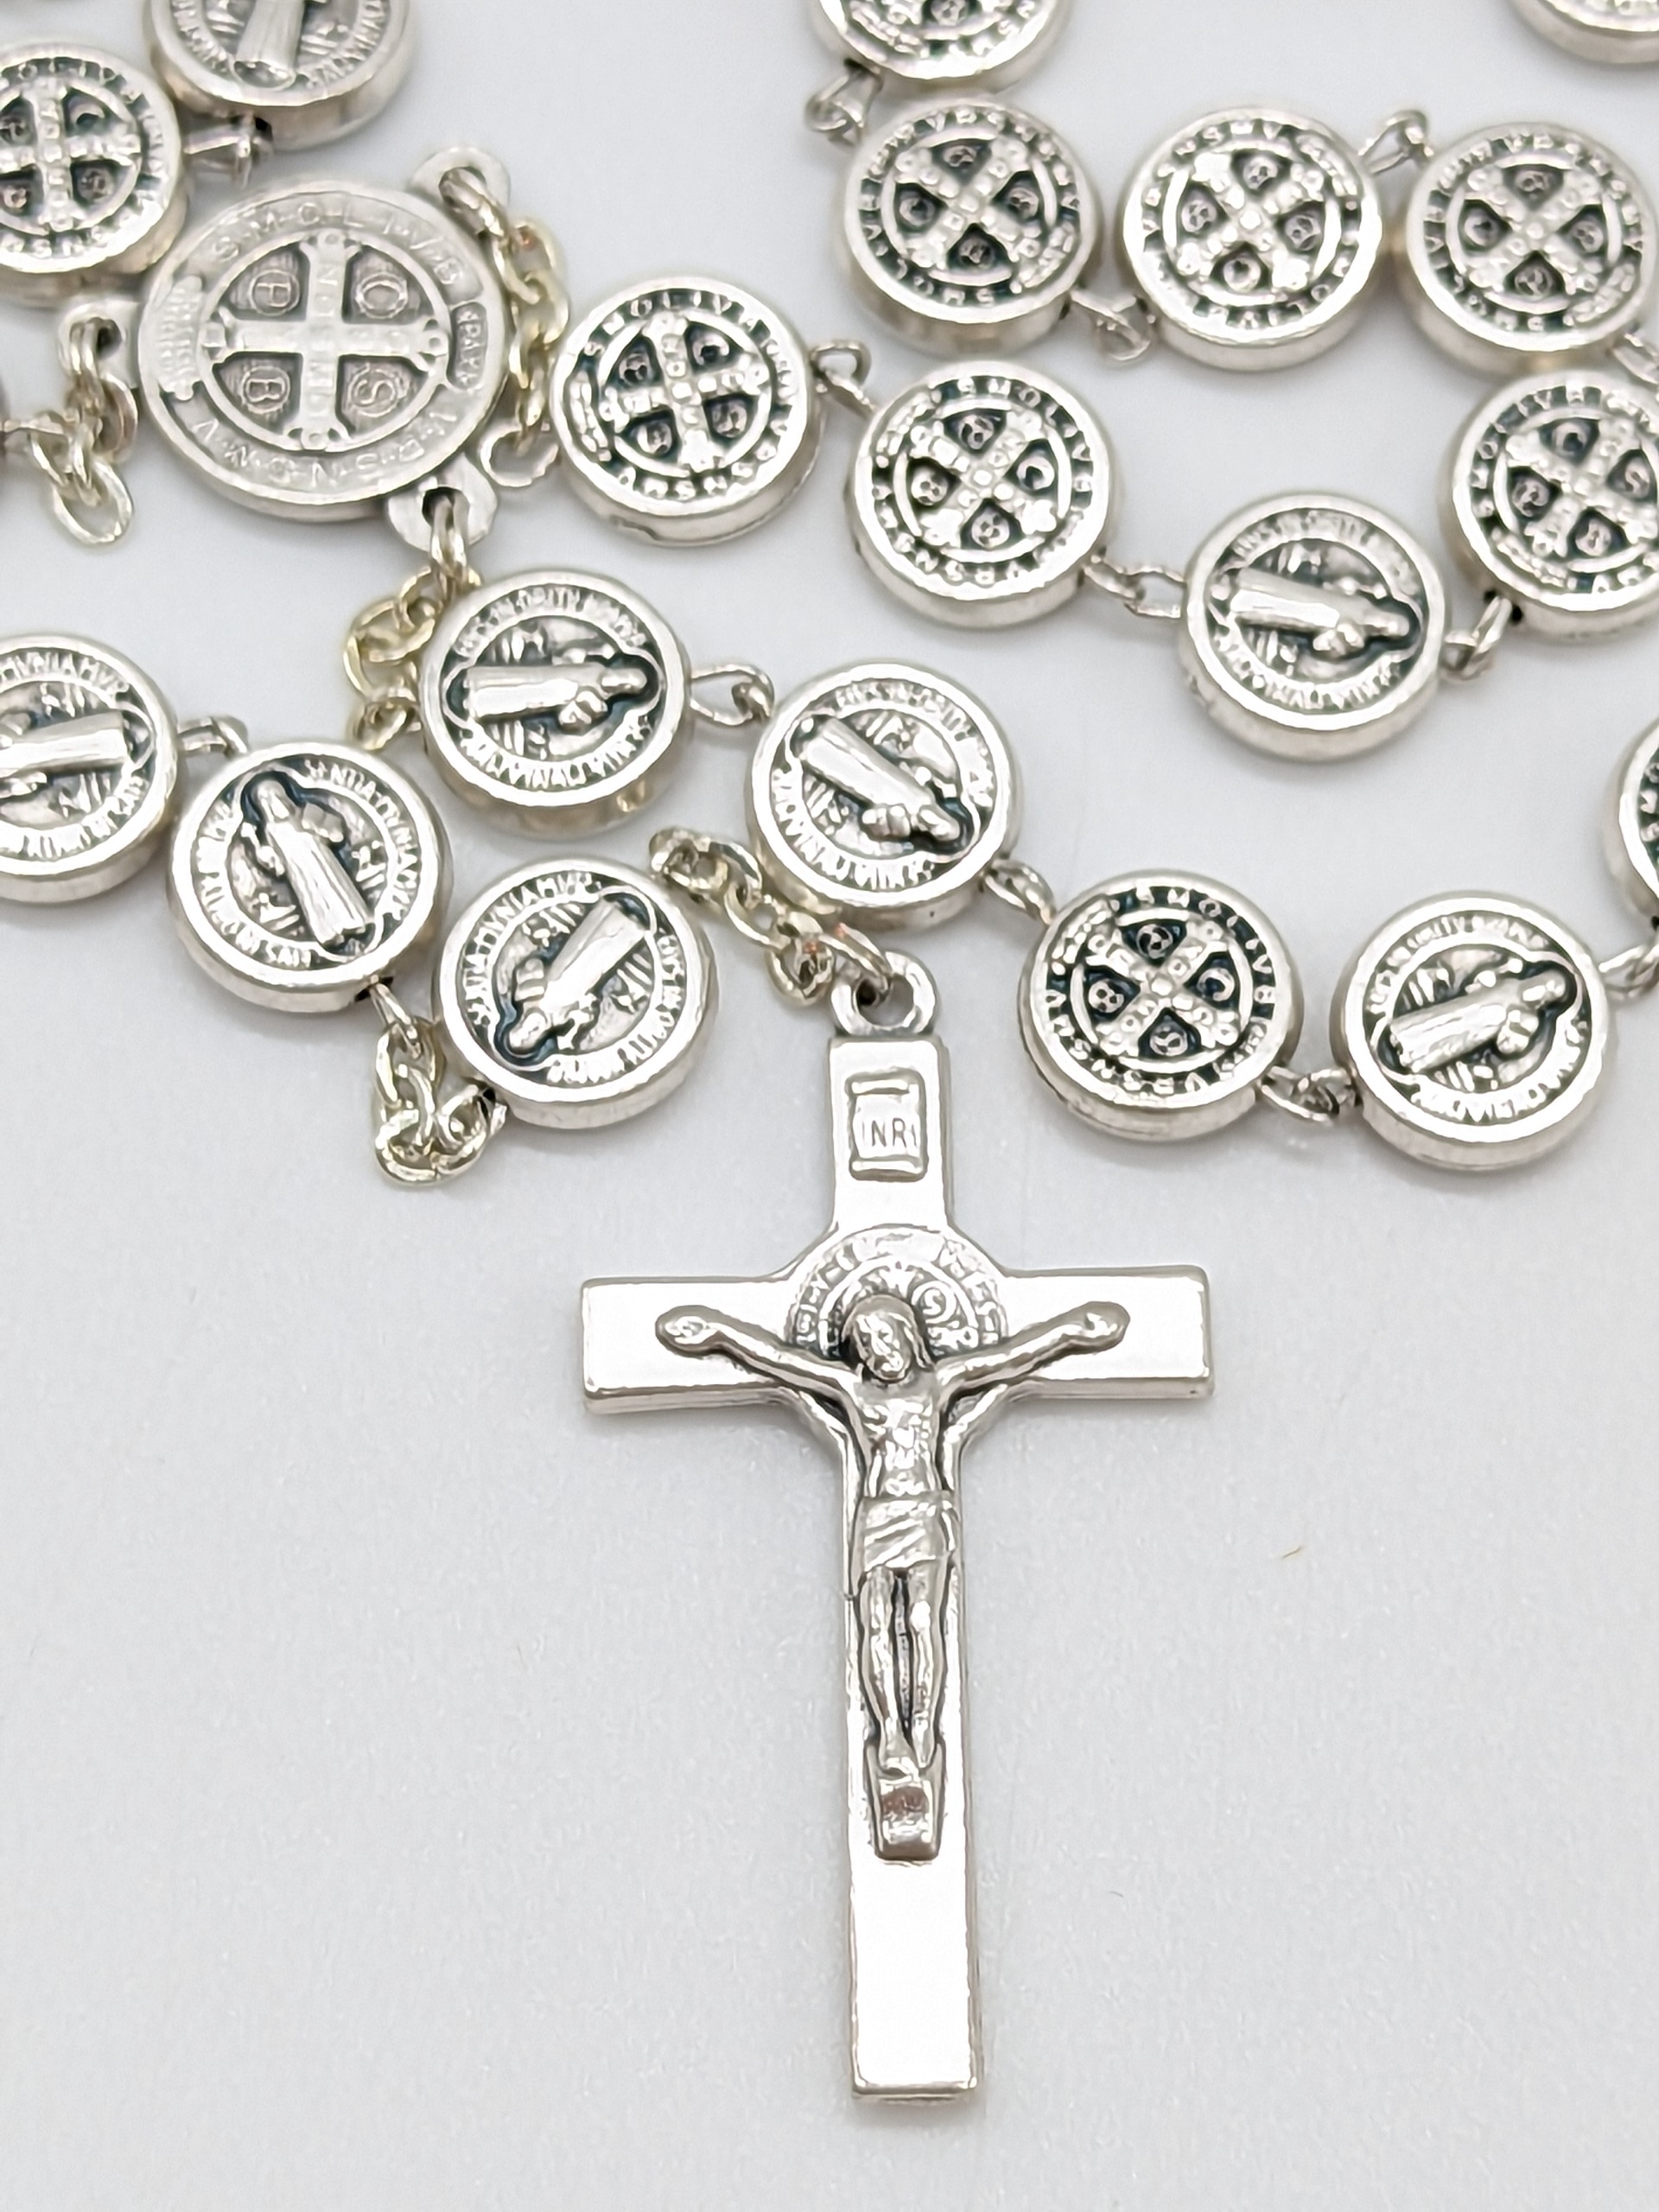 Rosario di San Benedetto cm. 54 con medaglie e croce in metallo